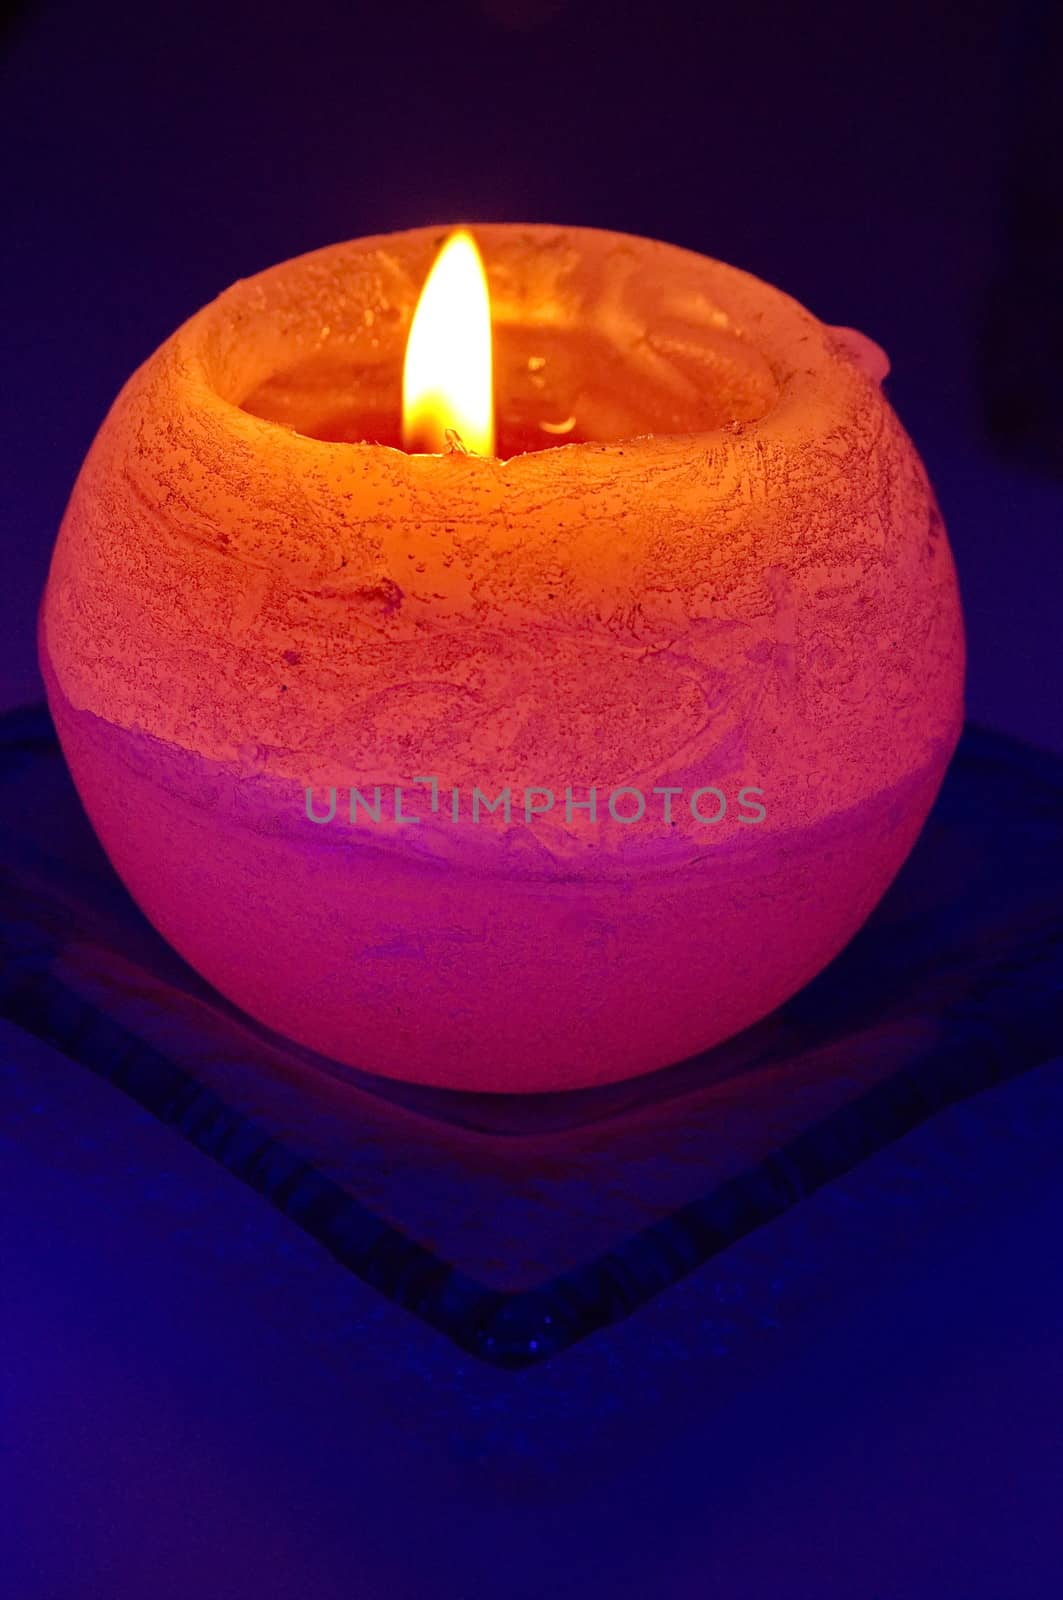 Orange candle on blue background